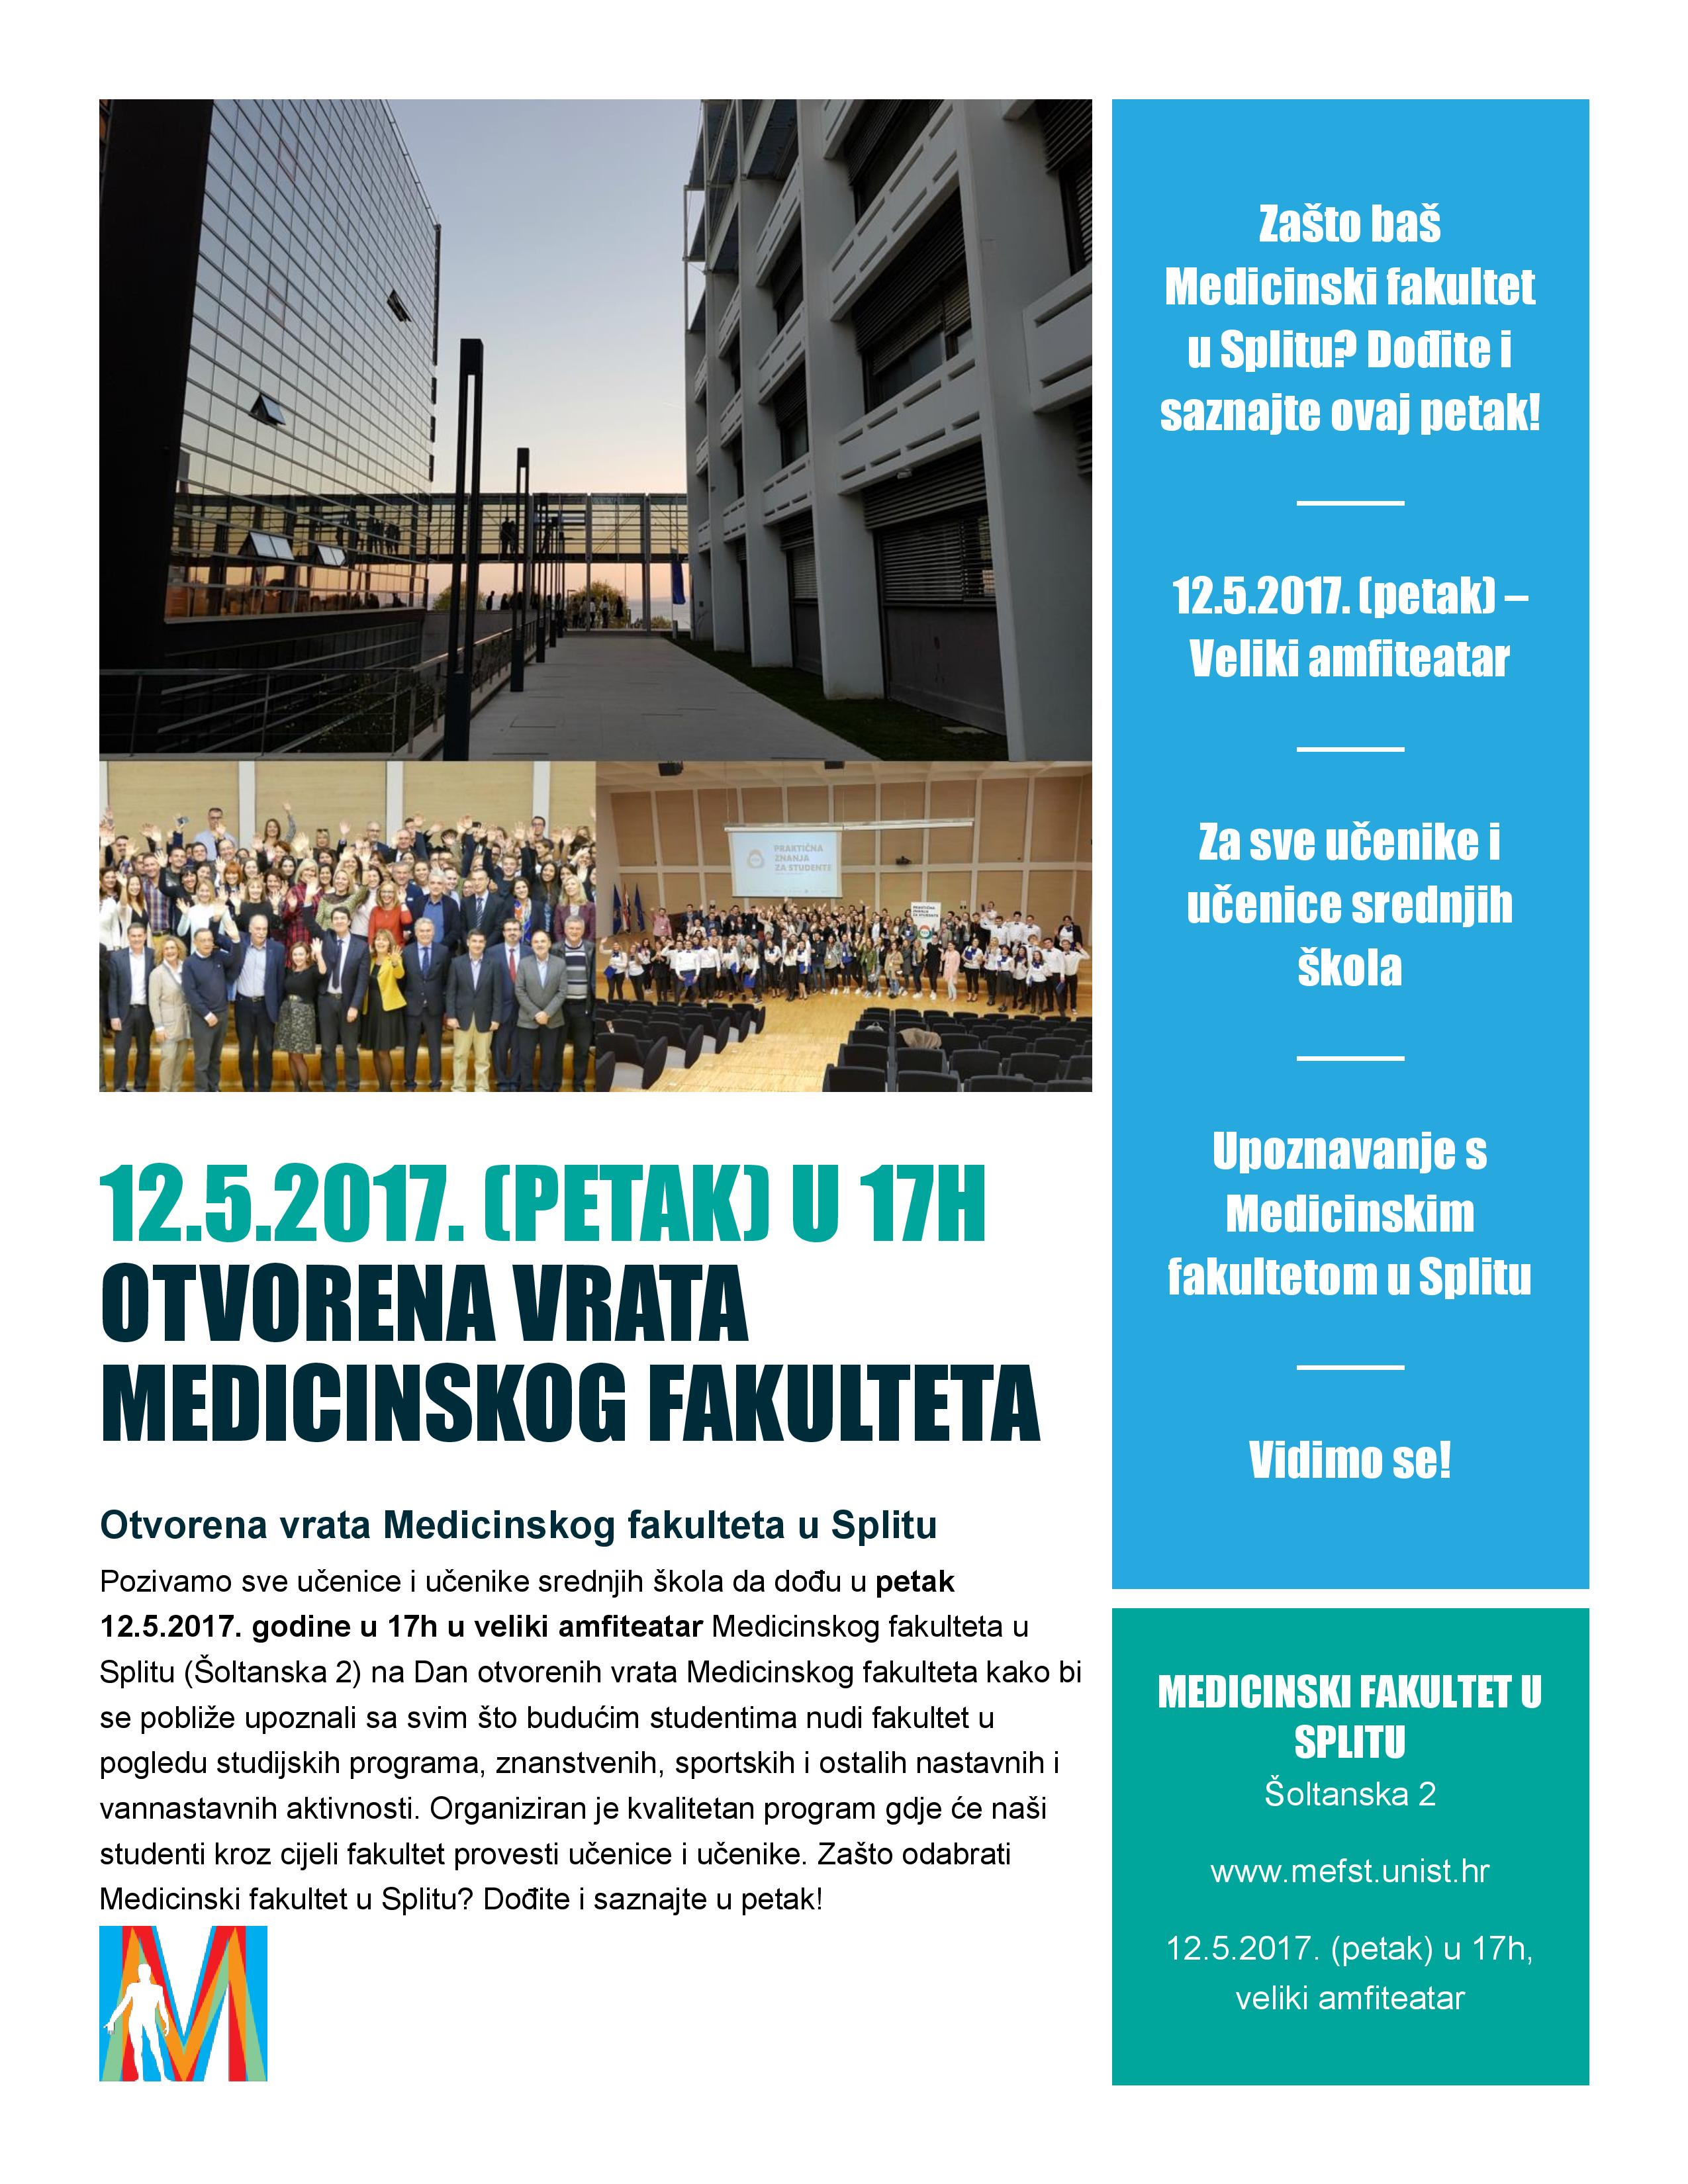 Dan otvorenih vrata Medicinskog fakulteta u Splitu 12.05.2017.